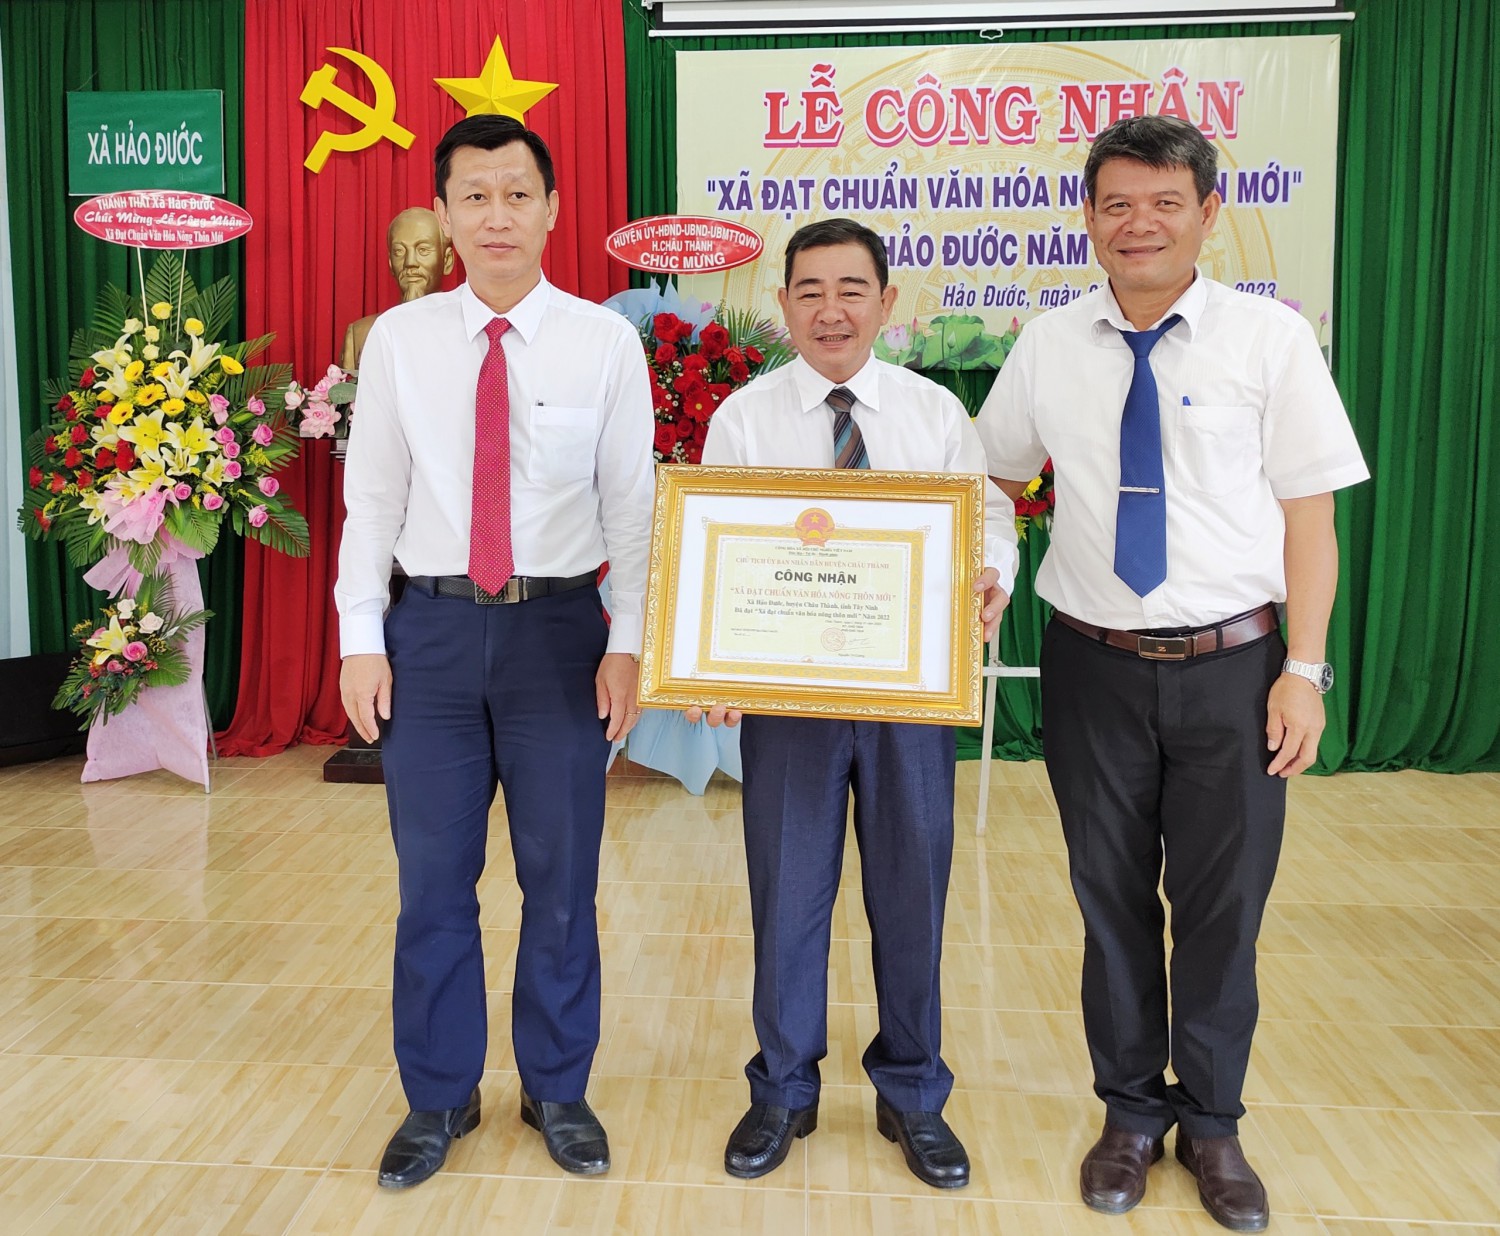 ông Nguyễn Trí Cường, Phó chủ tịch UBND huyện trao bảng công nhận xã đạt chuẩn văn hóa nông thôn mới cho xã Hảo Đước